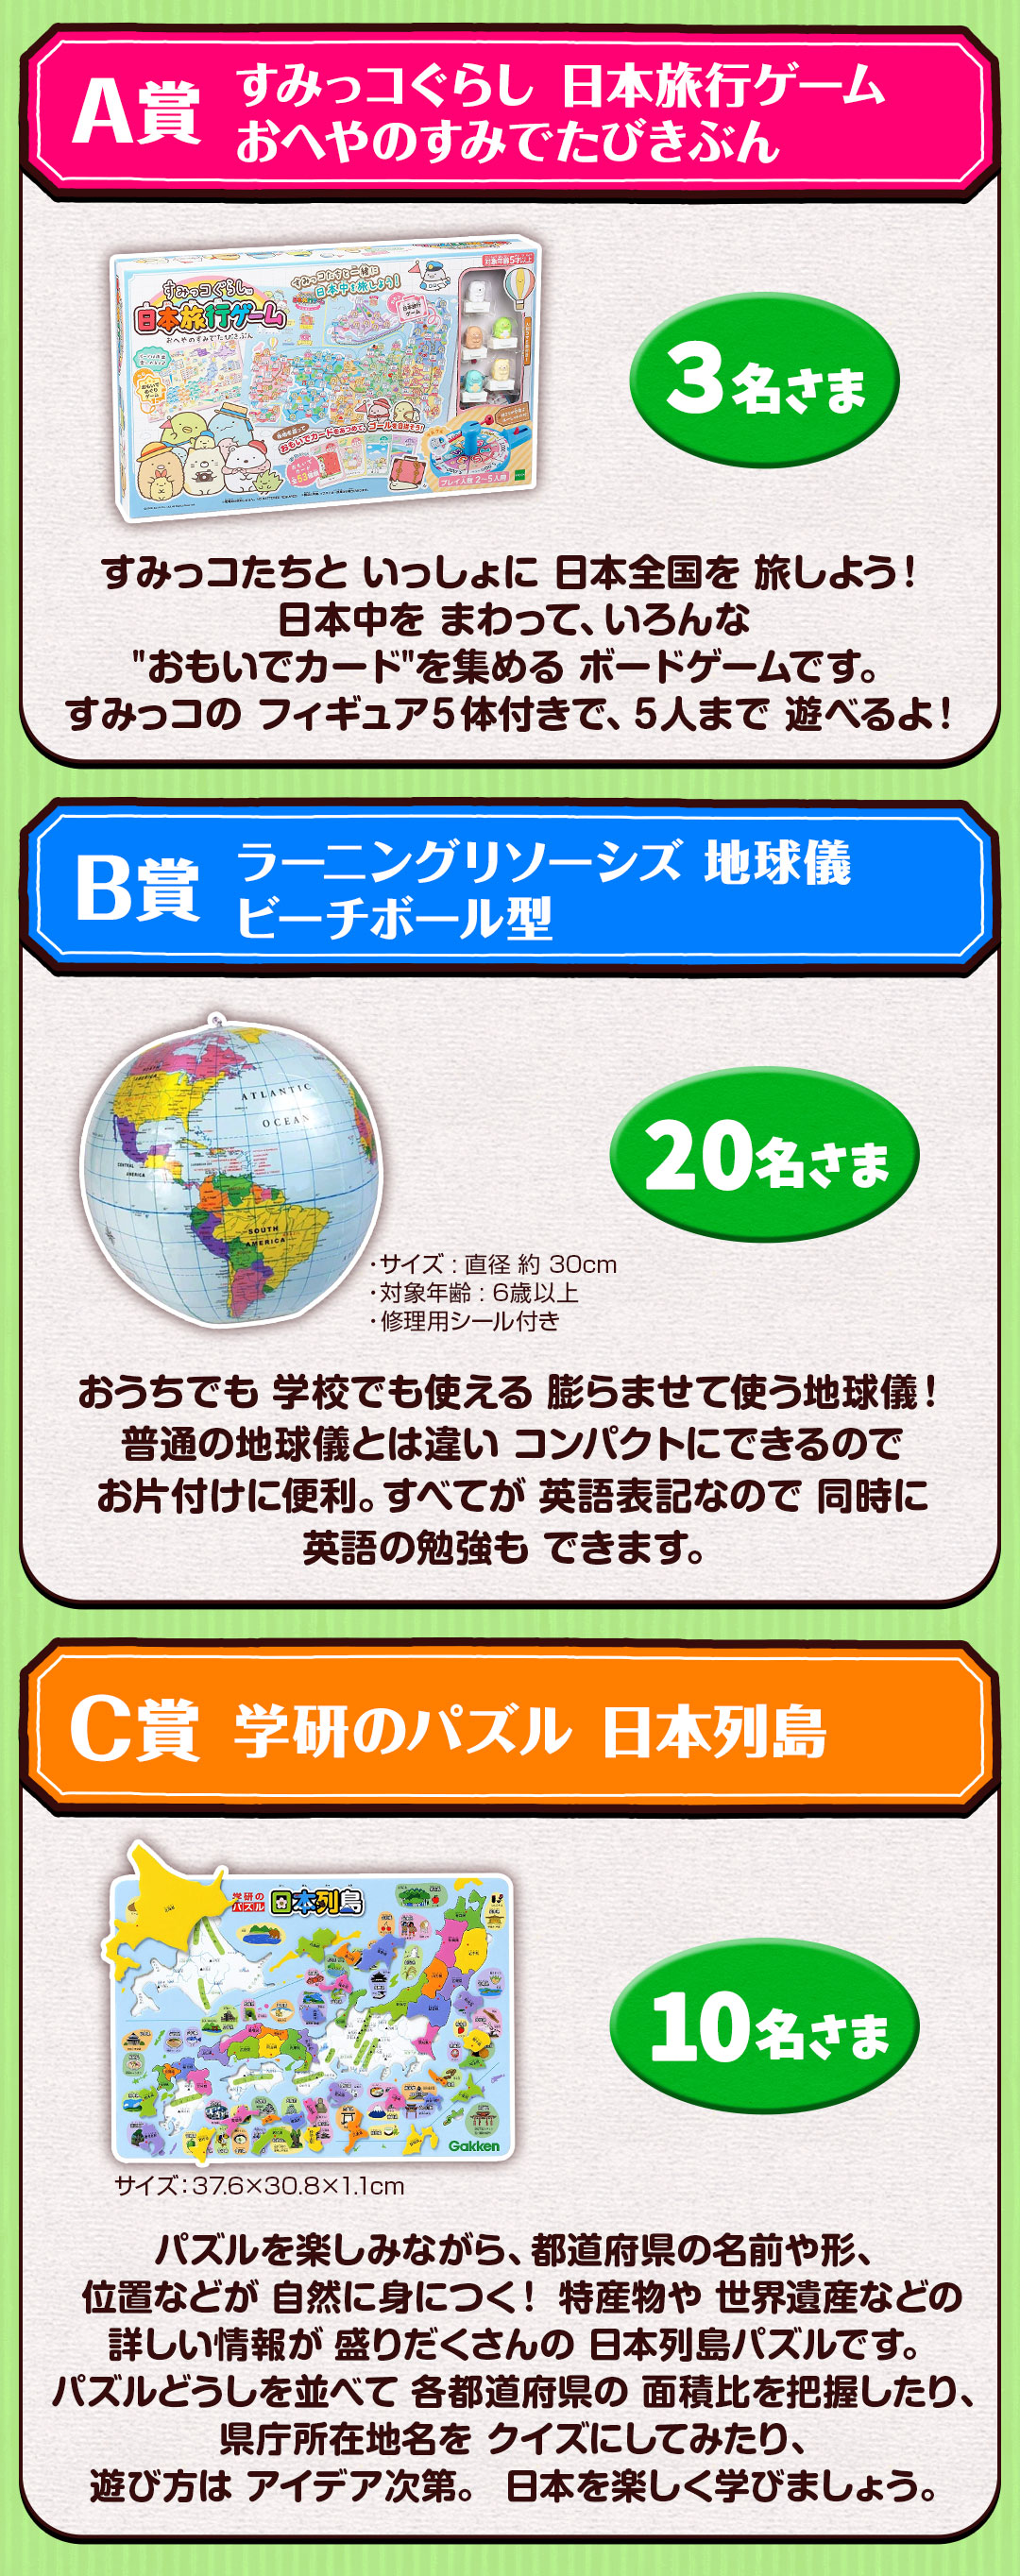 パズルで日本地図を学ぶ ちずモン プレゼントキャンペーン Dキッズ